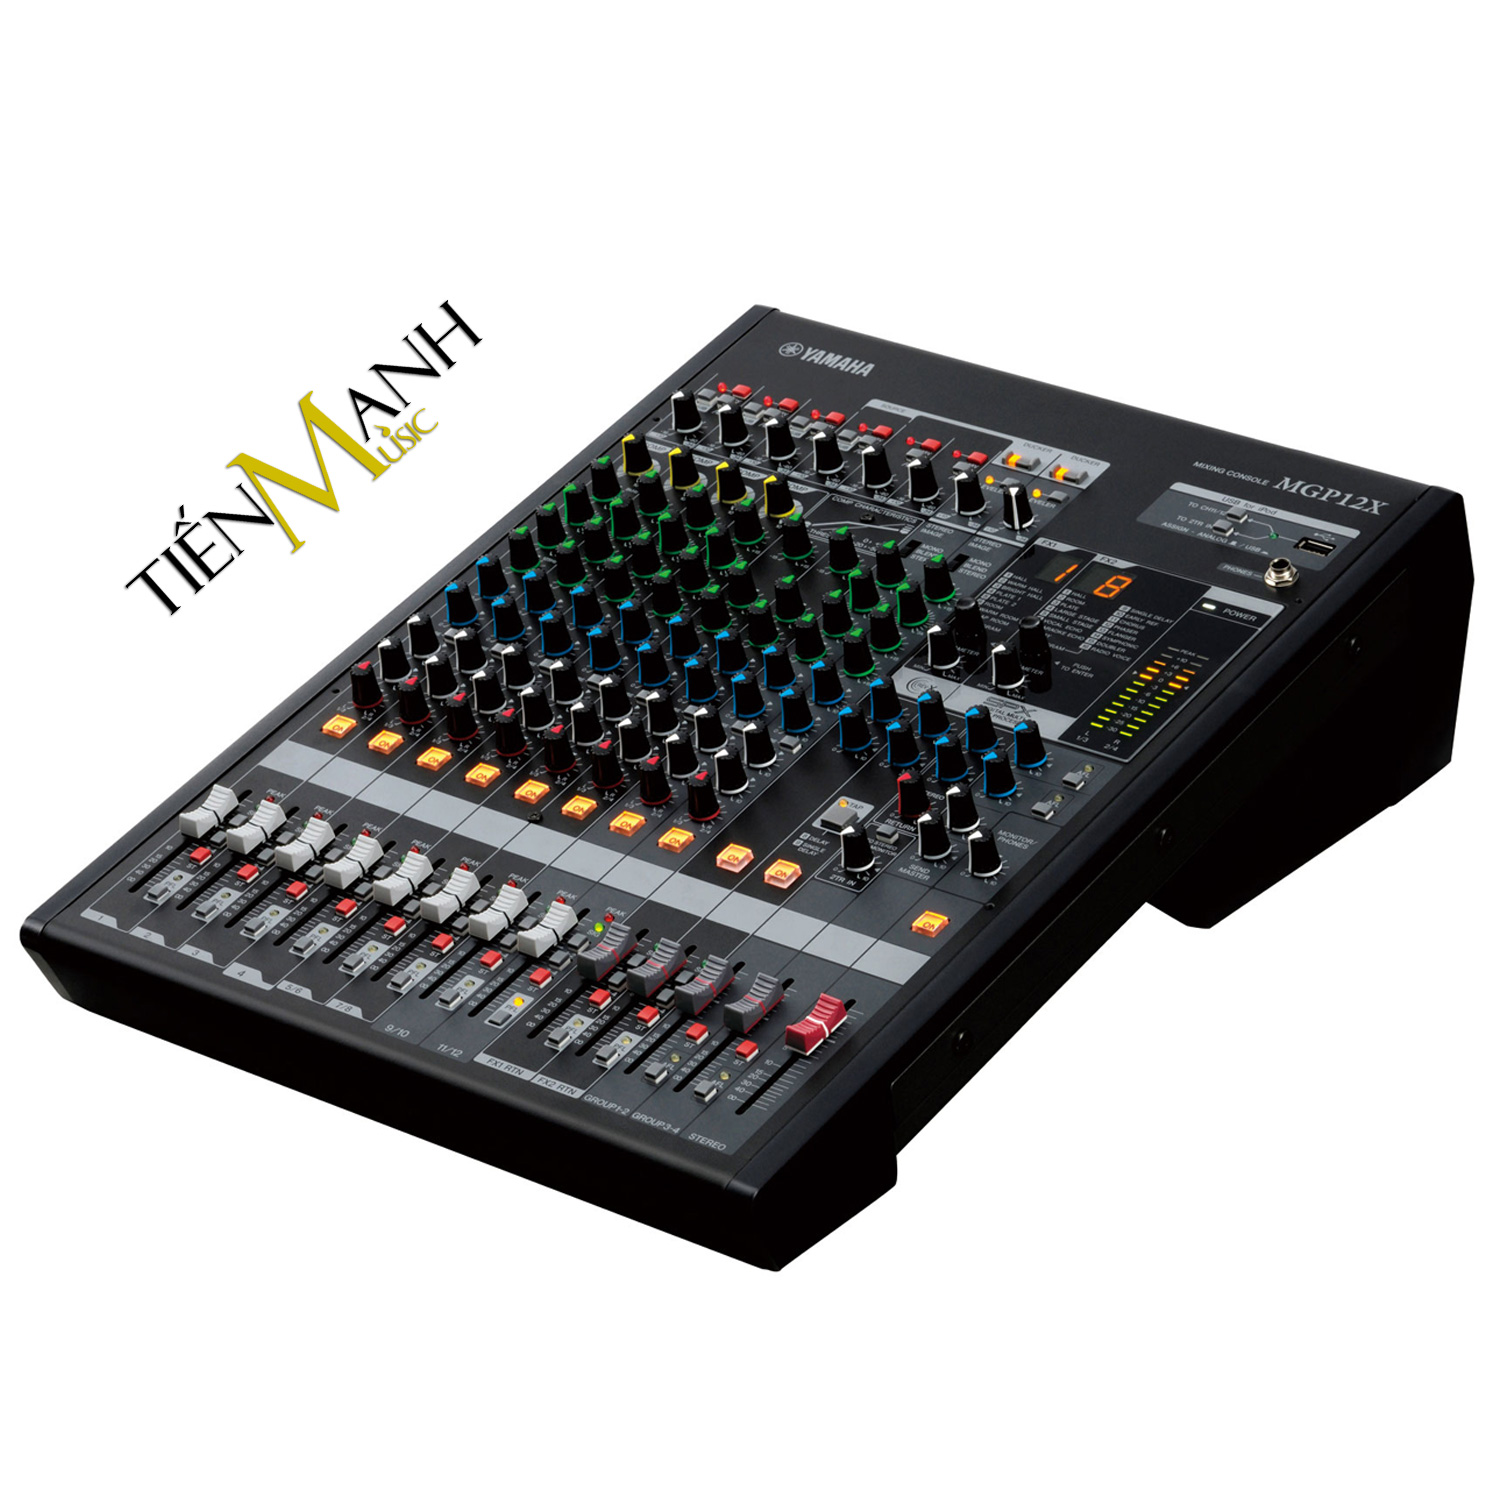 Yamaha MGP12X Soundcard kiêm Bàn Trộn Mixer Interface Stereo Mixing Phòng Thu Studio Mix MGP12 Hàng Chính Hãng - Kèm Móng Gẩy DreamMaker